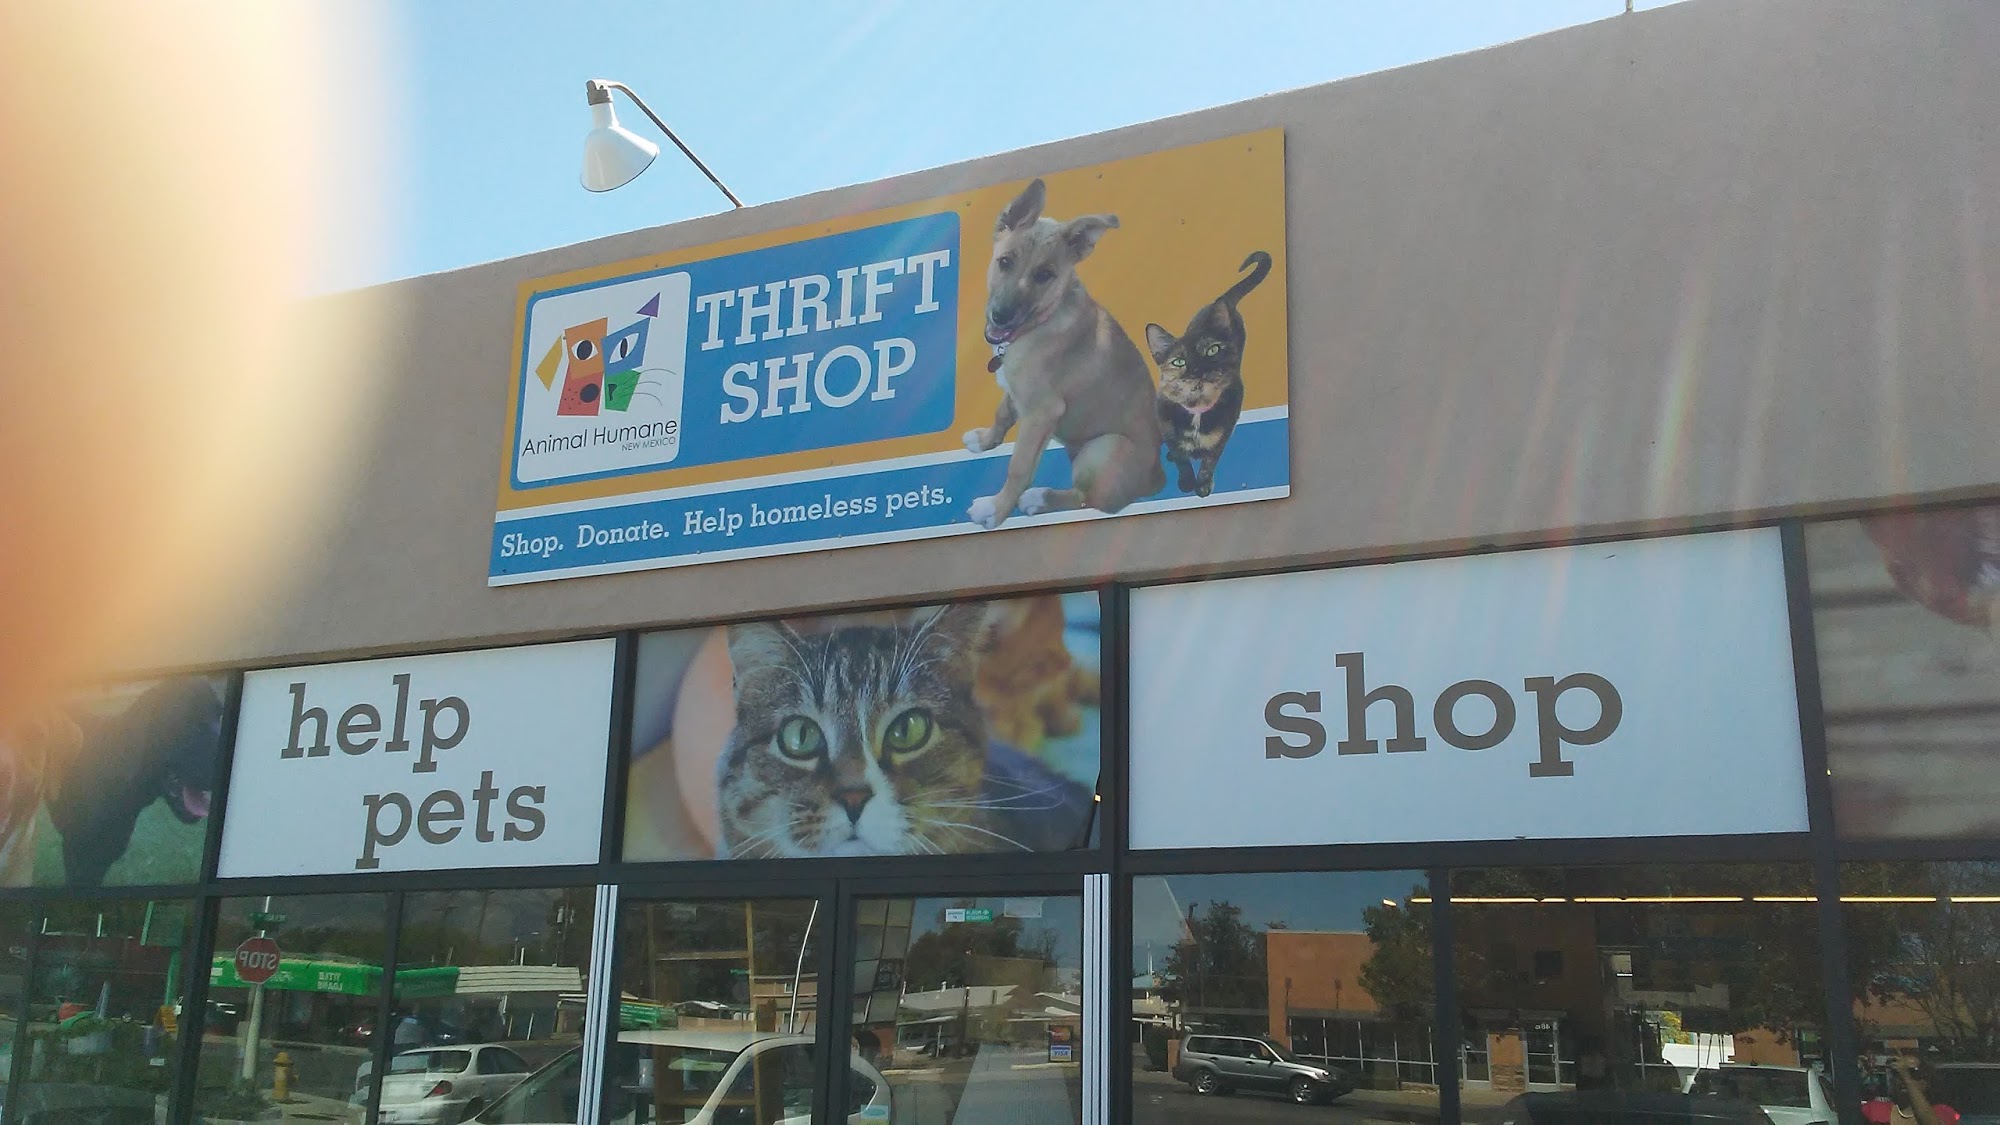 Animal Humane Thrift Shop